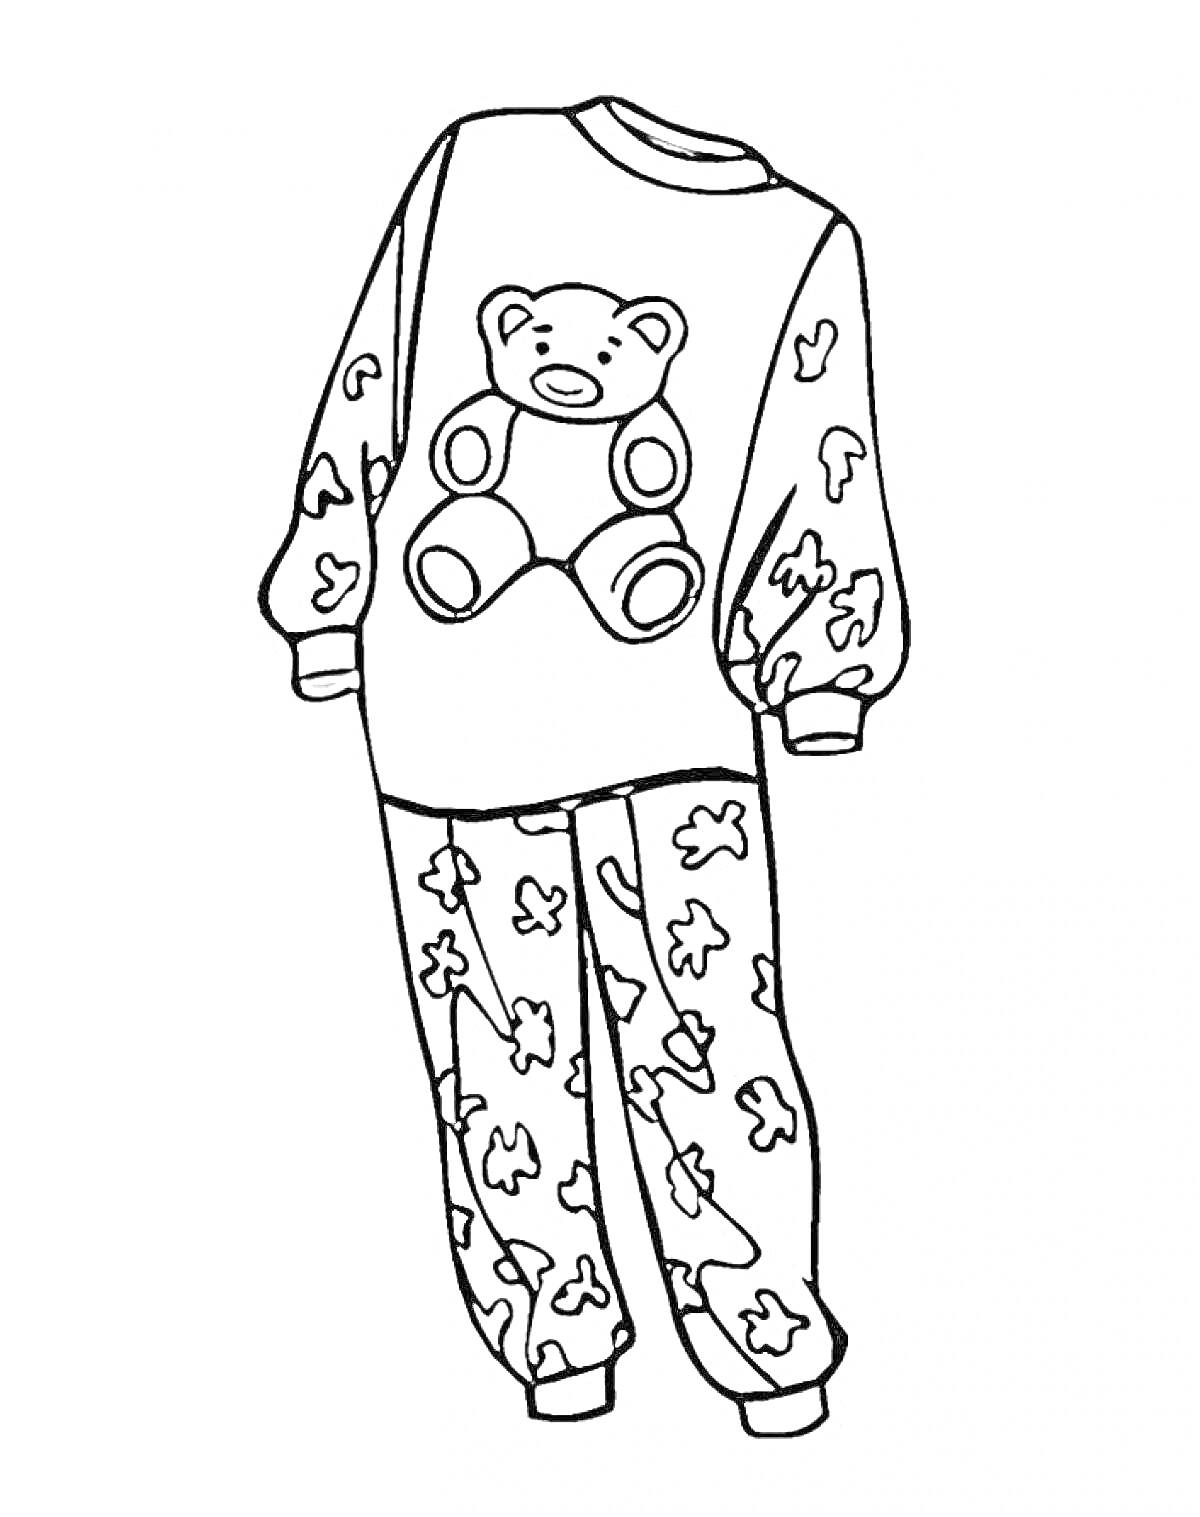 Пижама с мишкой, включающая свитер с изображением медвежонка и штаны с рисунком в виде разных медвежат.